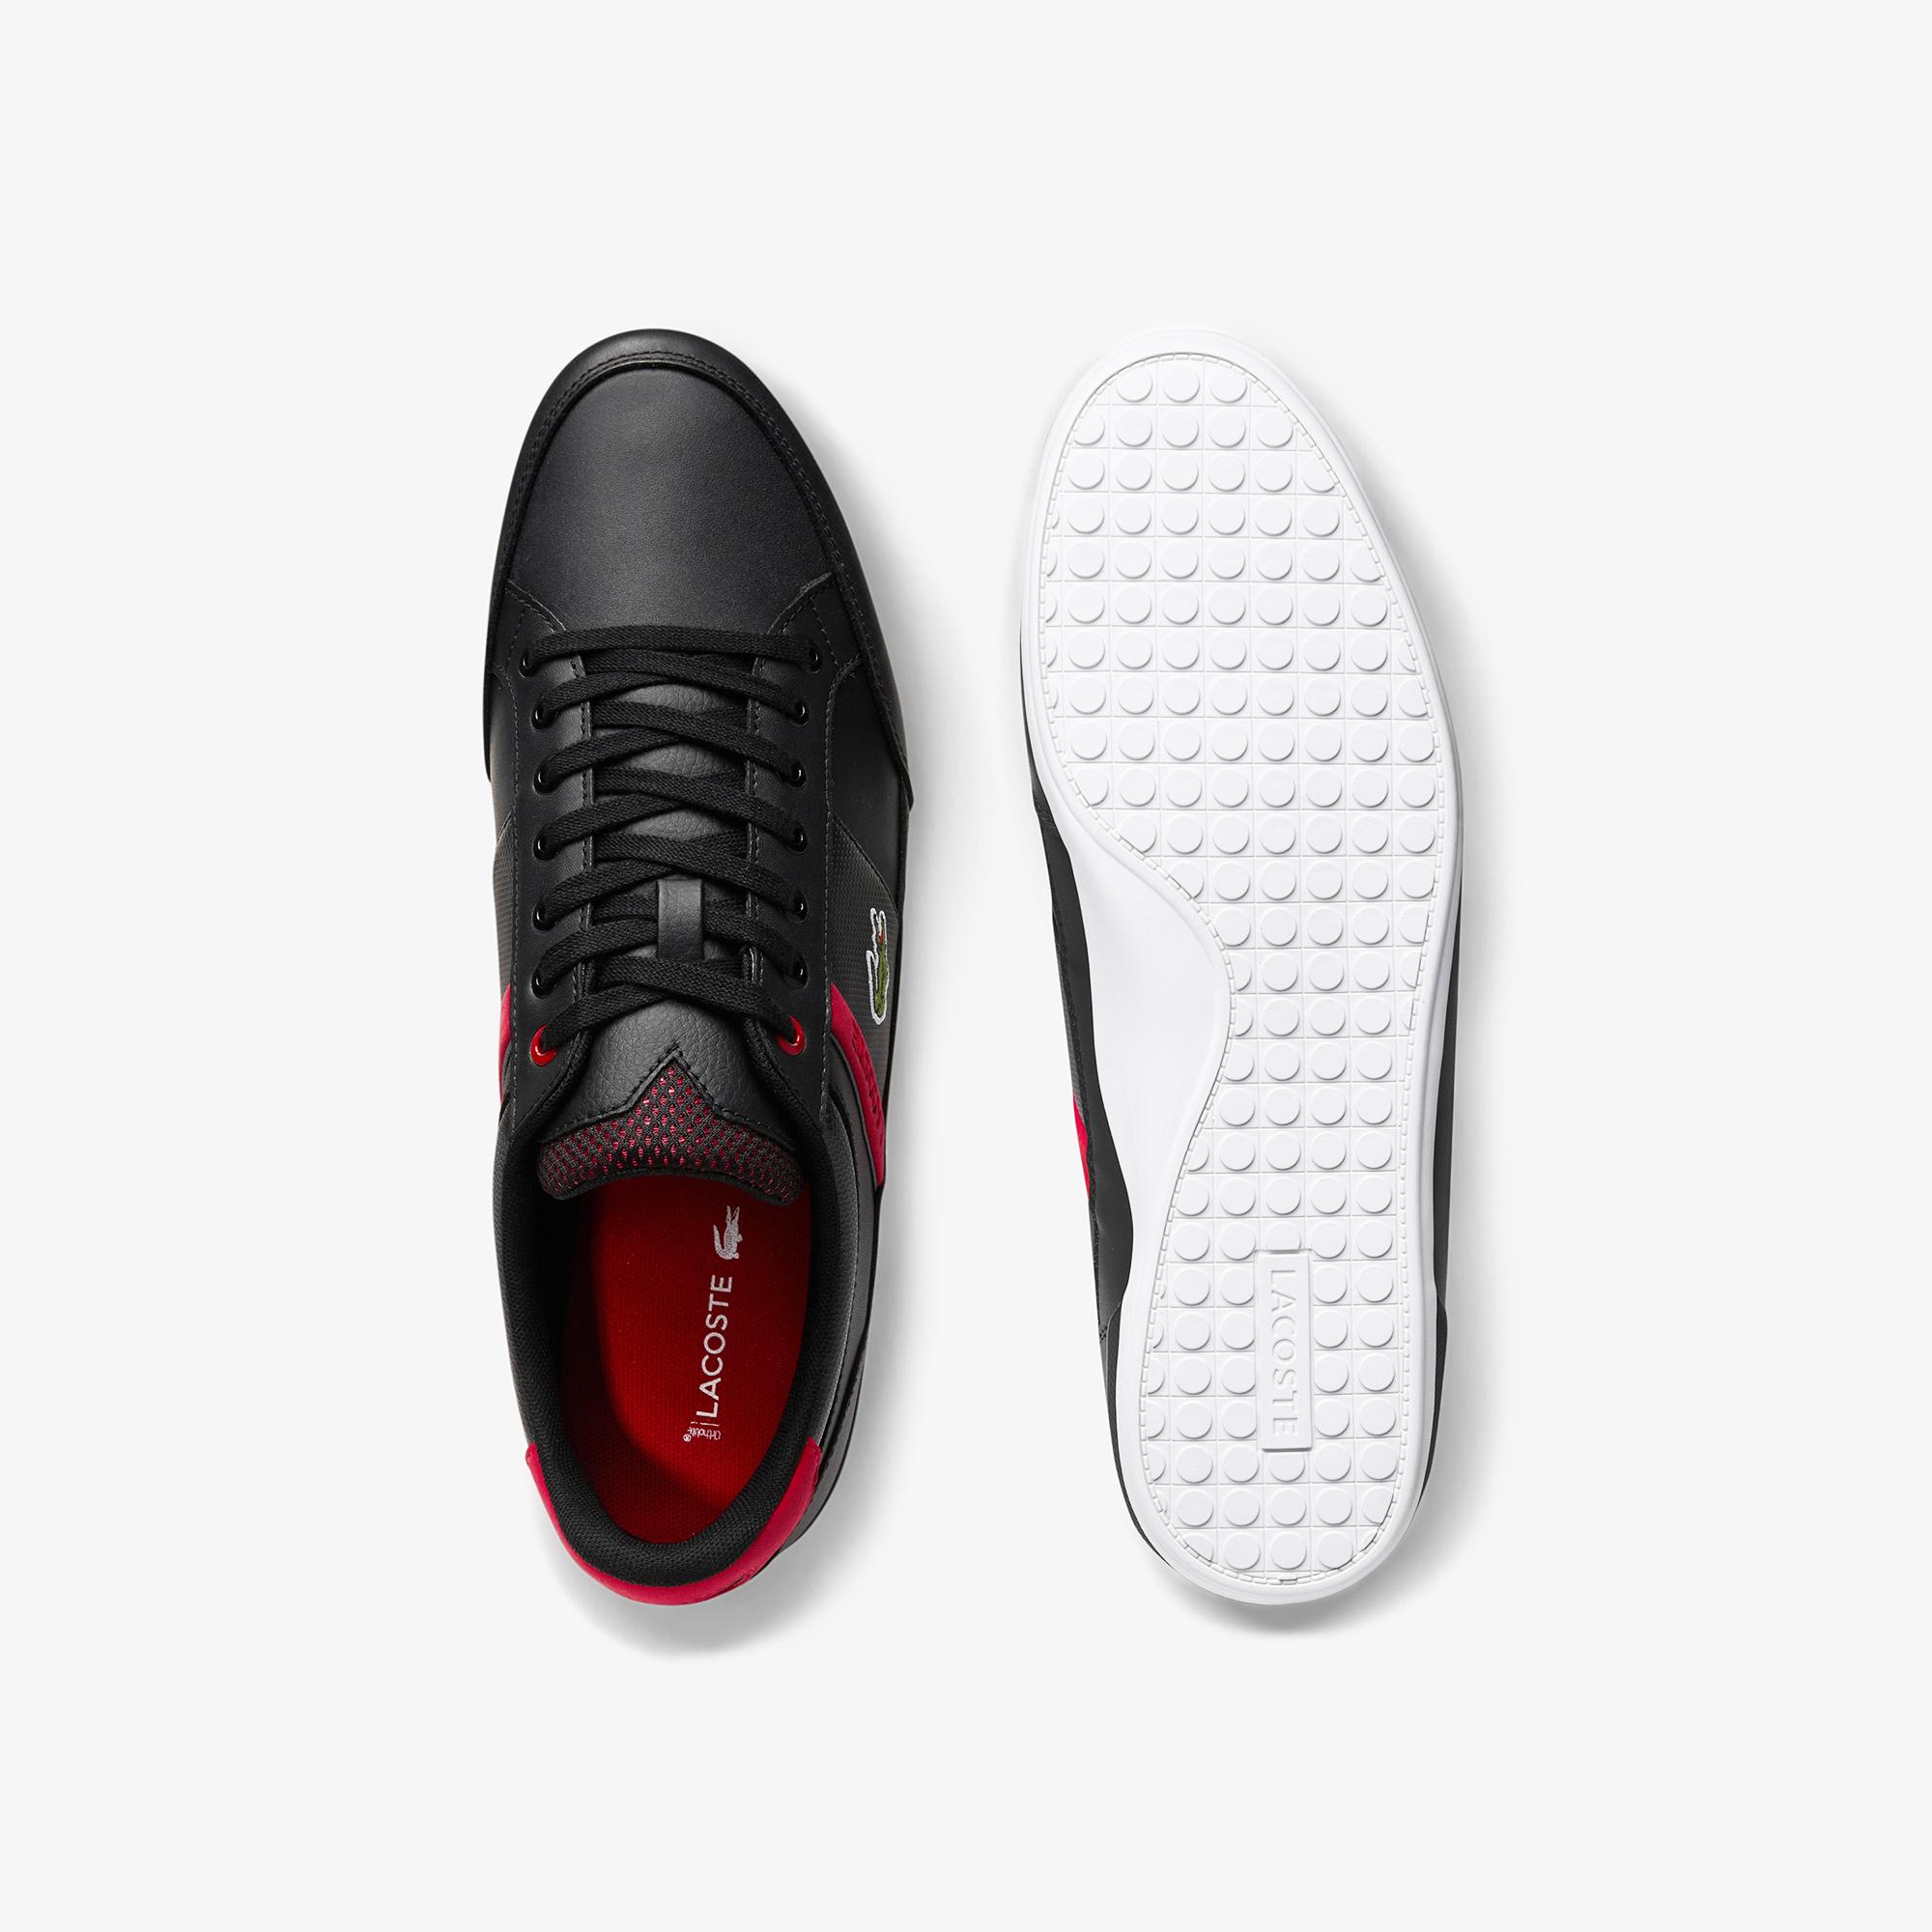 Lacoste Chaymon 0120 2 Cma Erkek Siyah - Kırmızı Casual Ayakkabı. 5